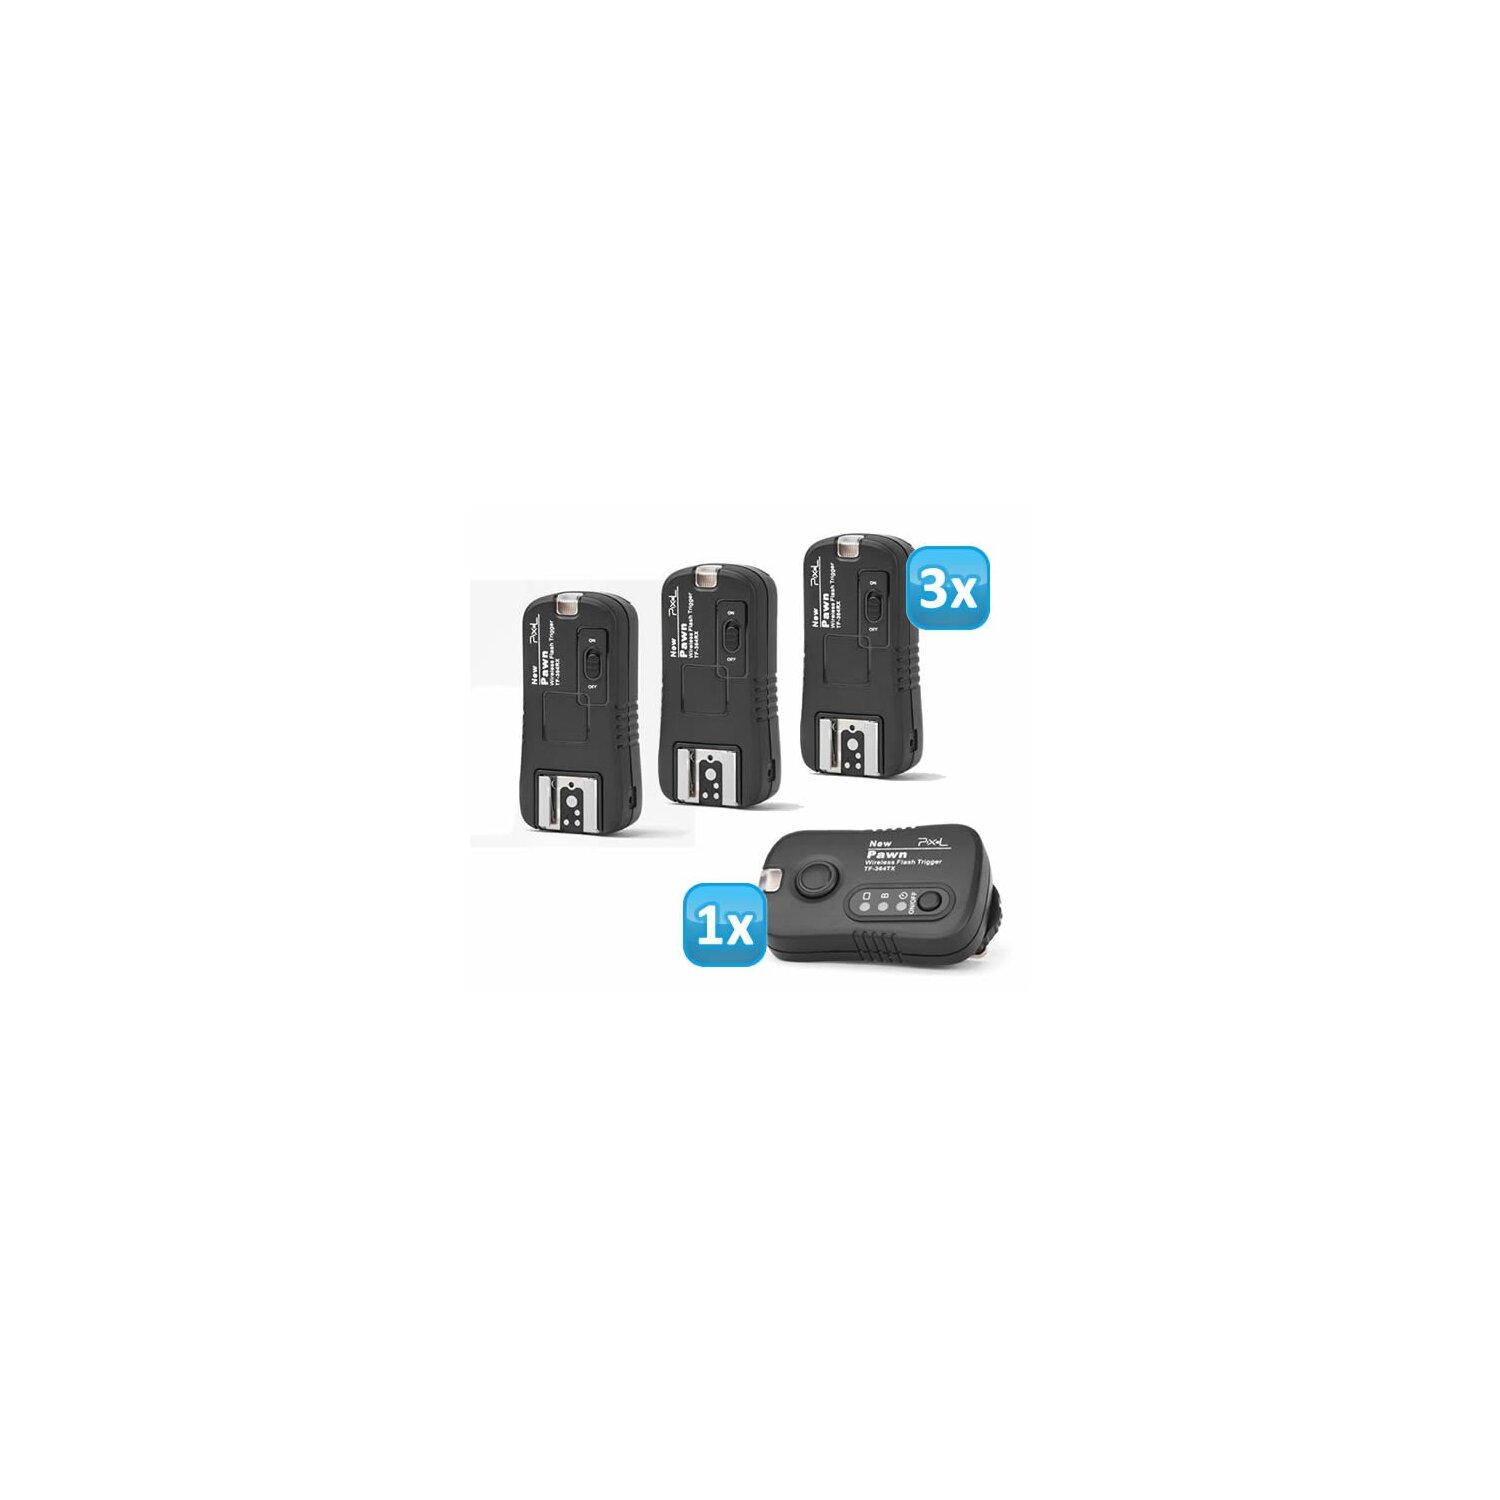 Pixel Pawn TF-364 Funk Blitzausloeser Set mit 3 Empfaengern bis 100m fuer Panasonic, Leica und Olympus Blitzgeraete – Funkausloeser Kamera- und Blitz